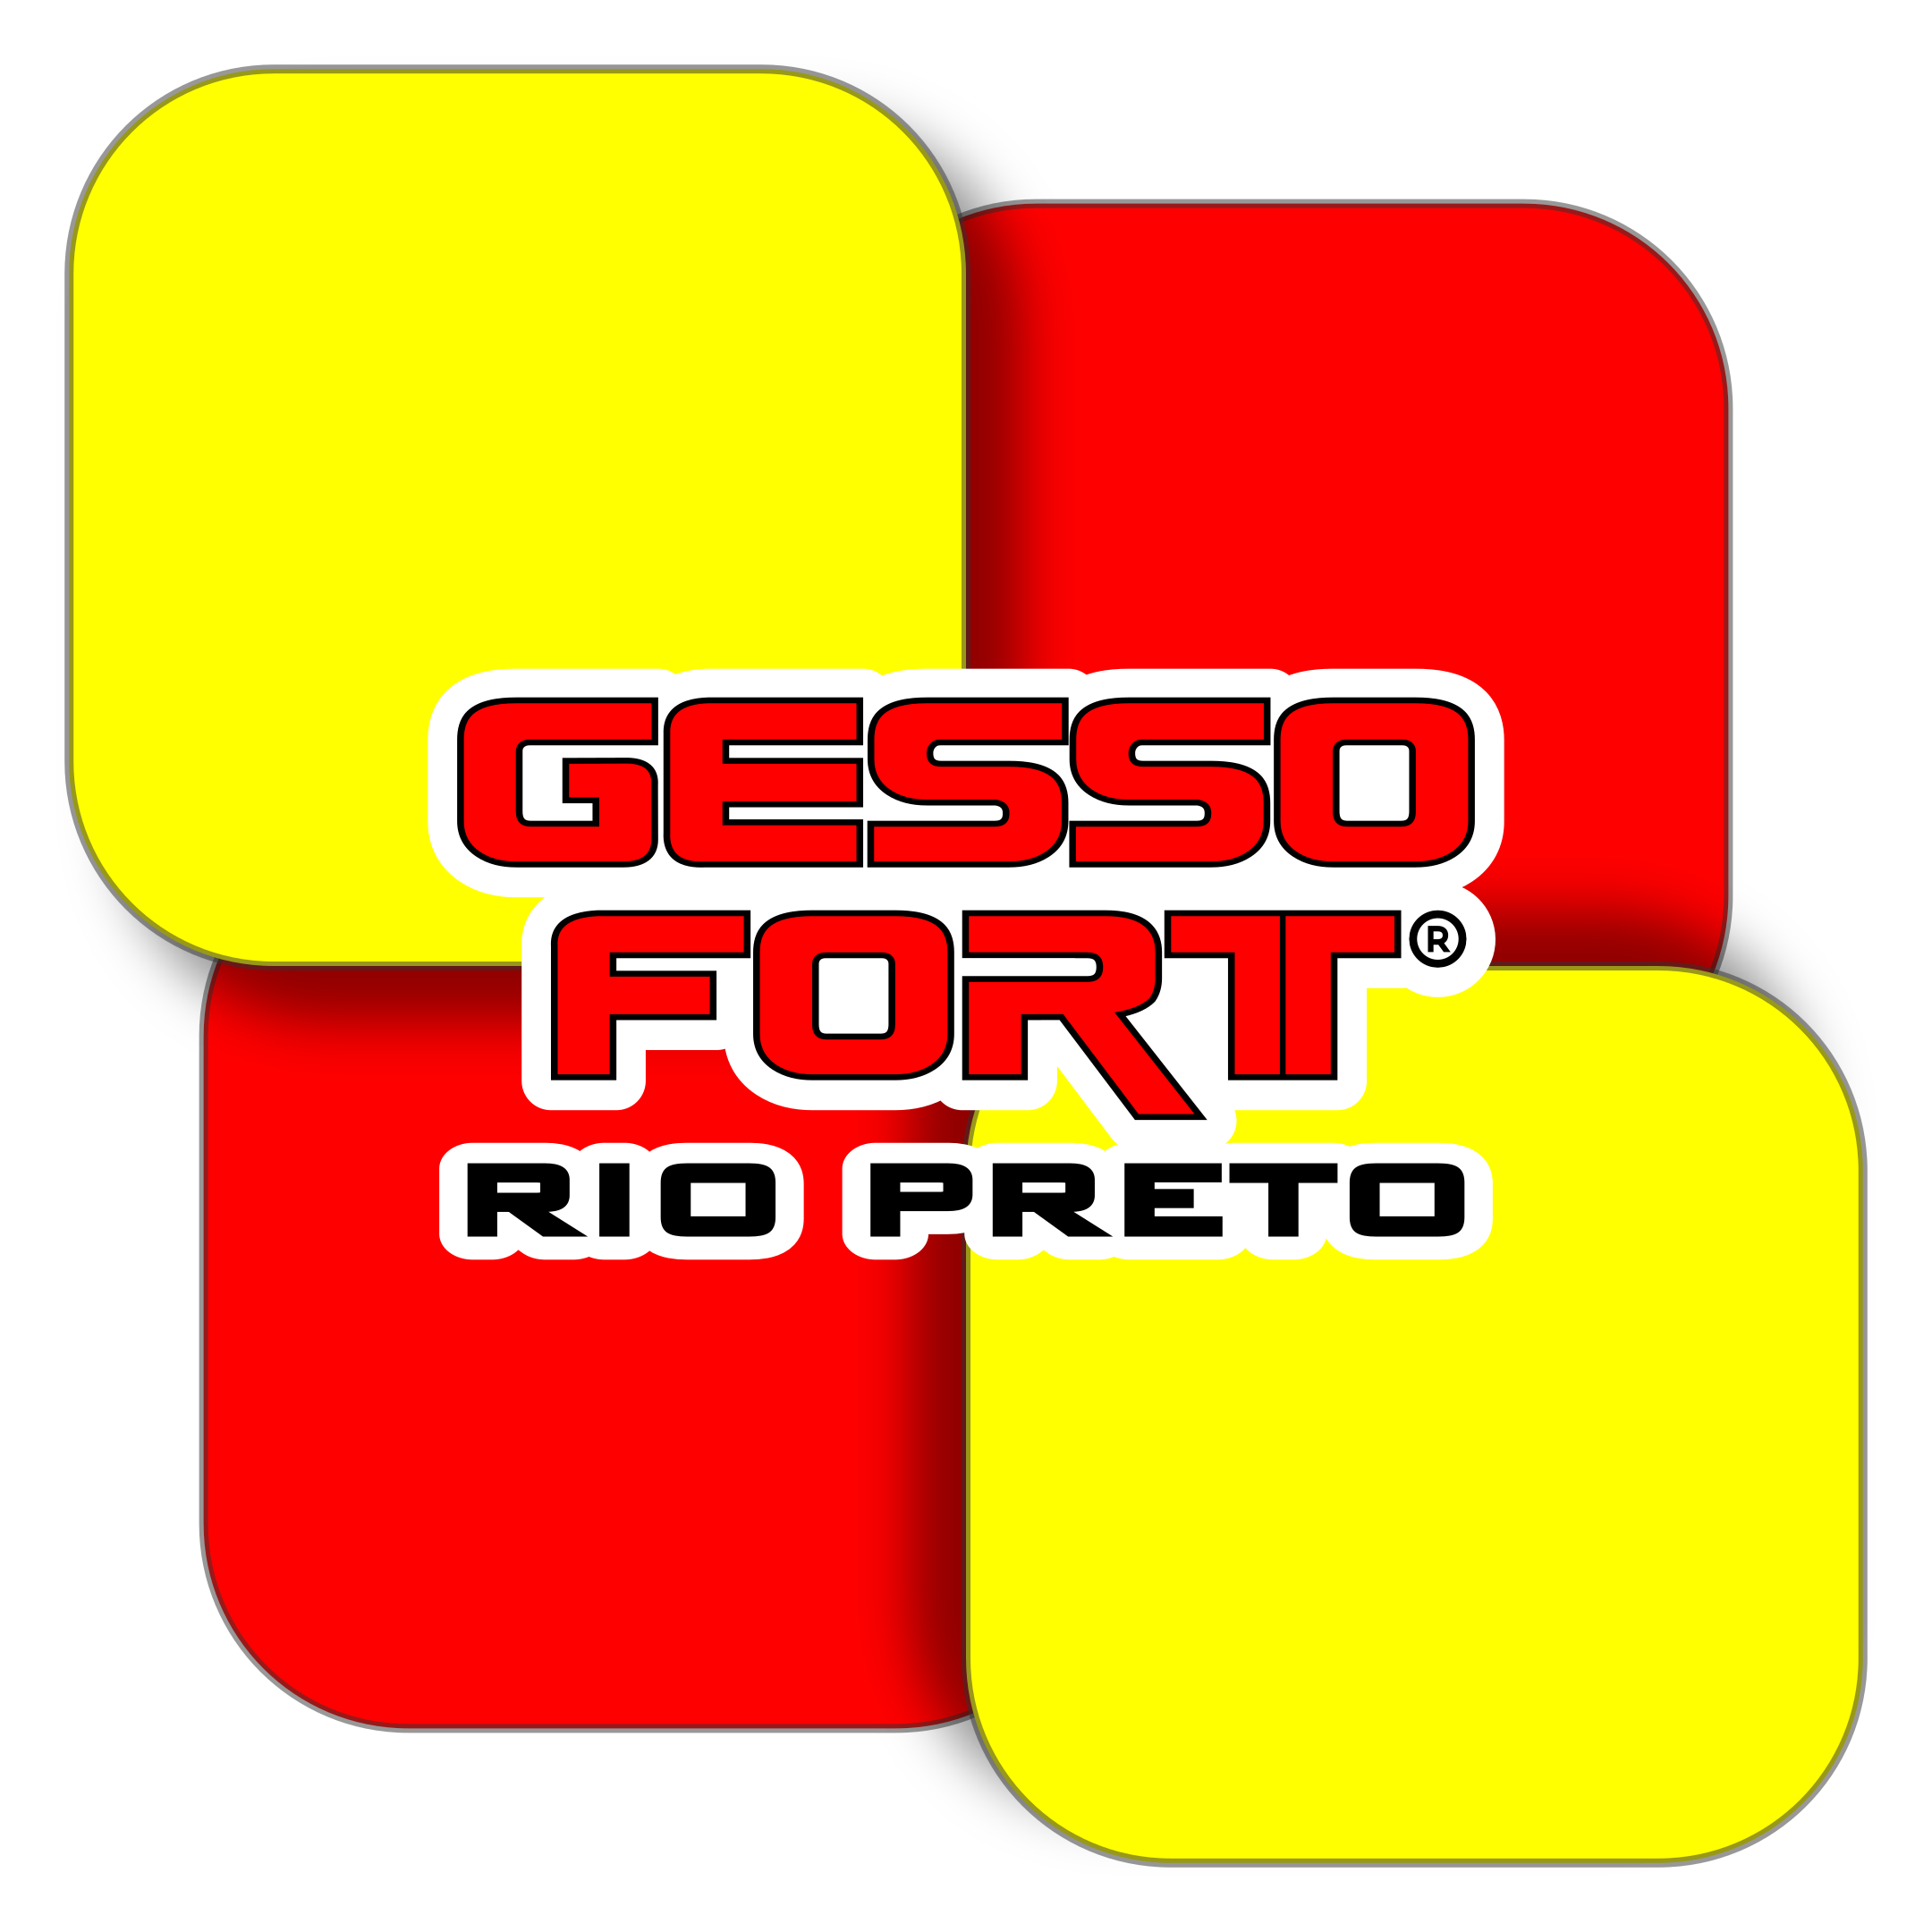 Gesso Fort Rio Preto